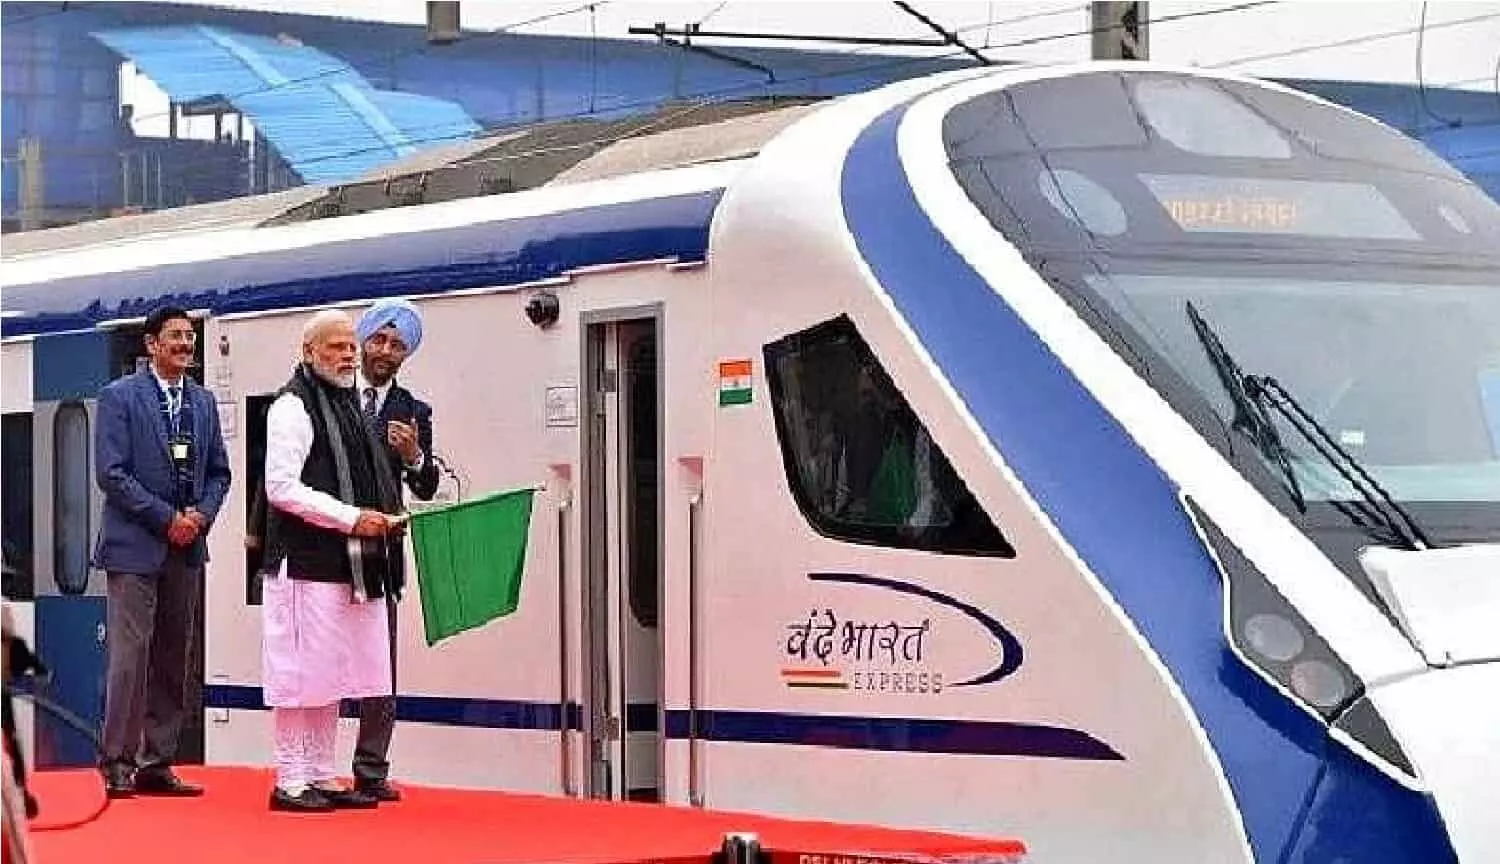 रेल यात्रियों के लिए अच्छी खबरः किसी पर्यटन से कम नही होगी वंदे भारत ट्रेन, भोपाल से दिल्ली के बीच करेगी सफर